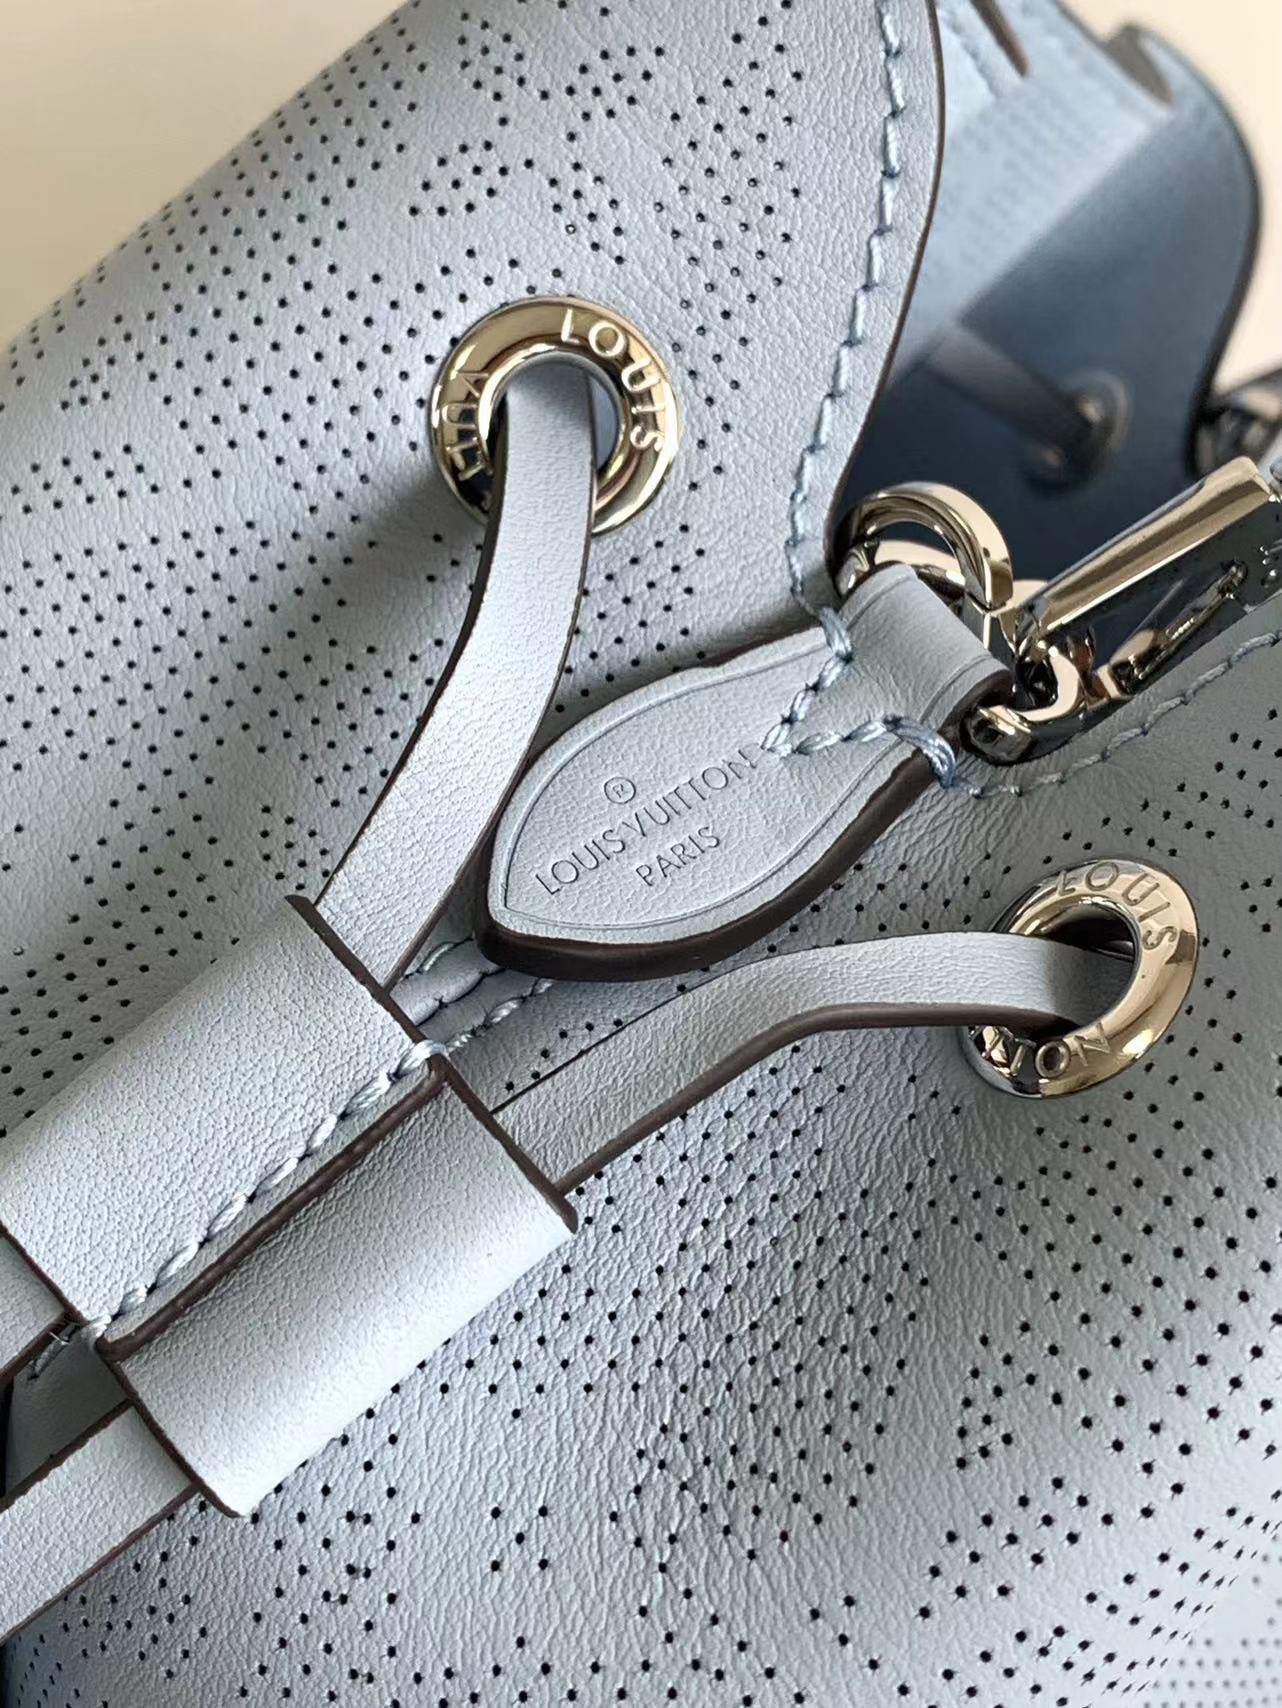 LV 2023 TILSITT Reverse Monogram Bag COMPARISONS Croisette Louis Vuitton  Spring Unboxing #luxurypl38 